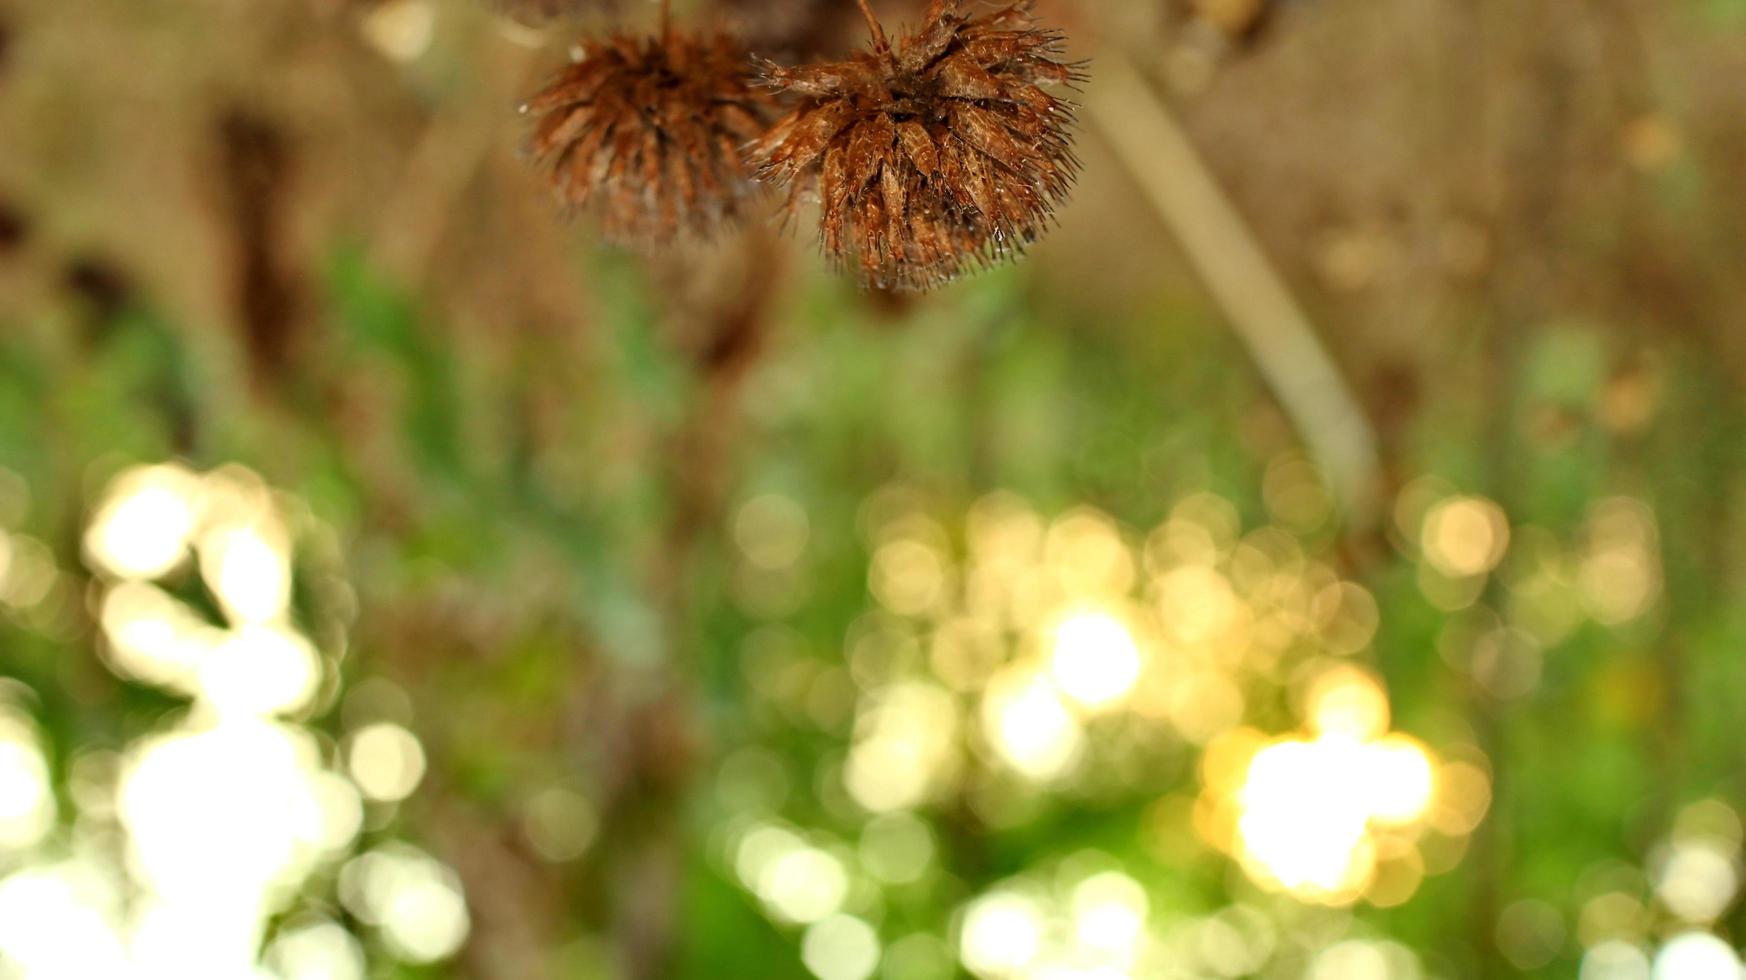 död- och torkades vildblommor, fotograferad med selektiv fokus foto